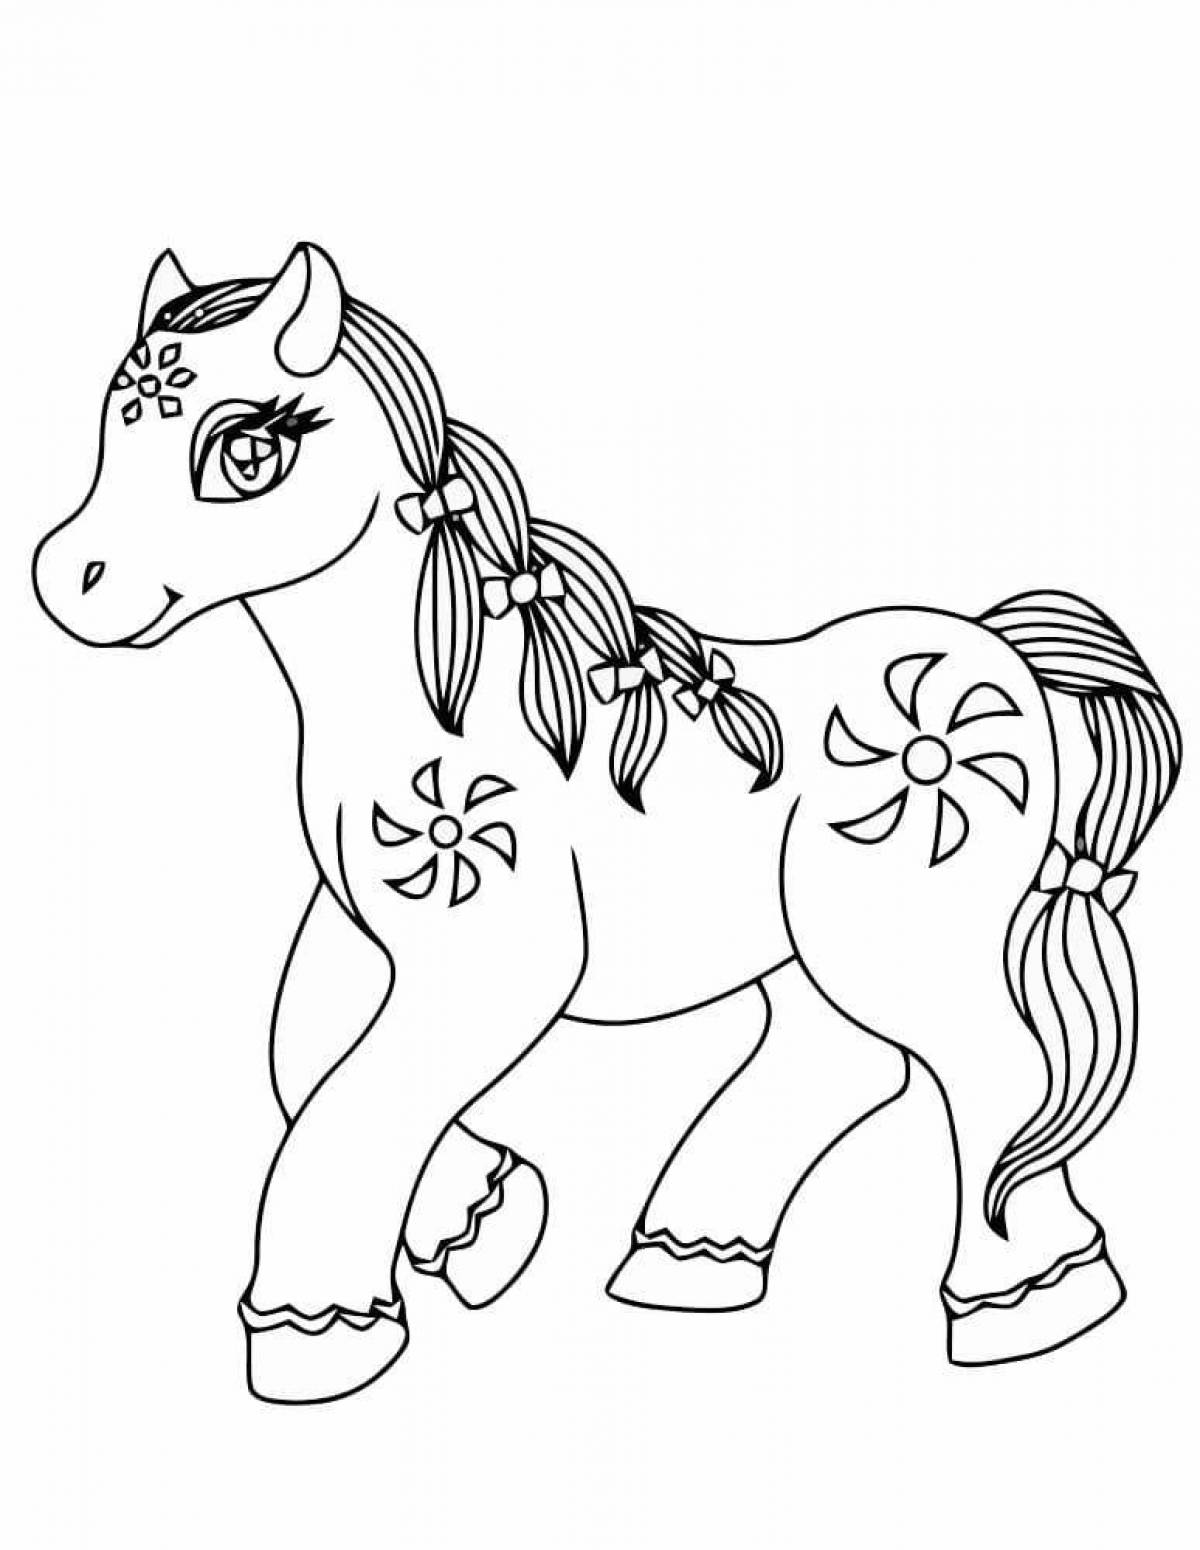 Экзотическая раскраска лошадь для детей 5-6 лет